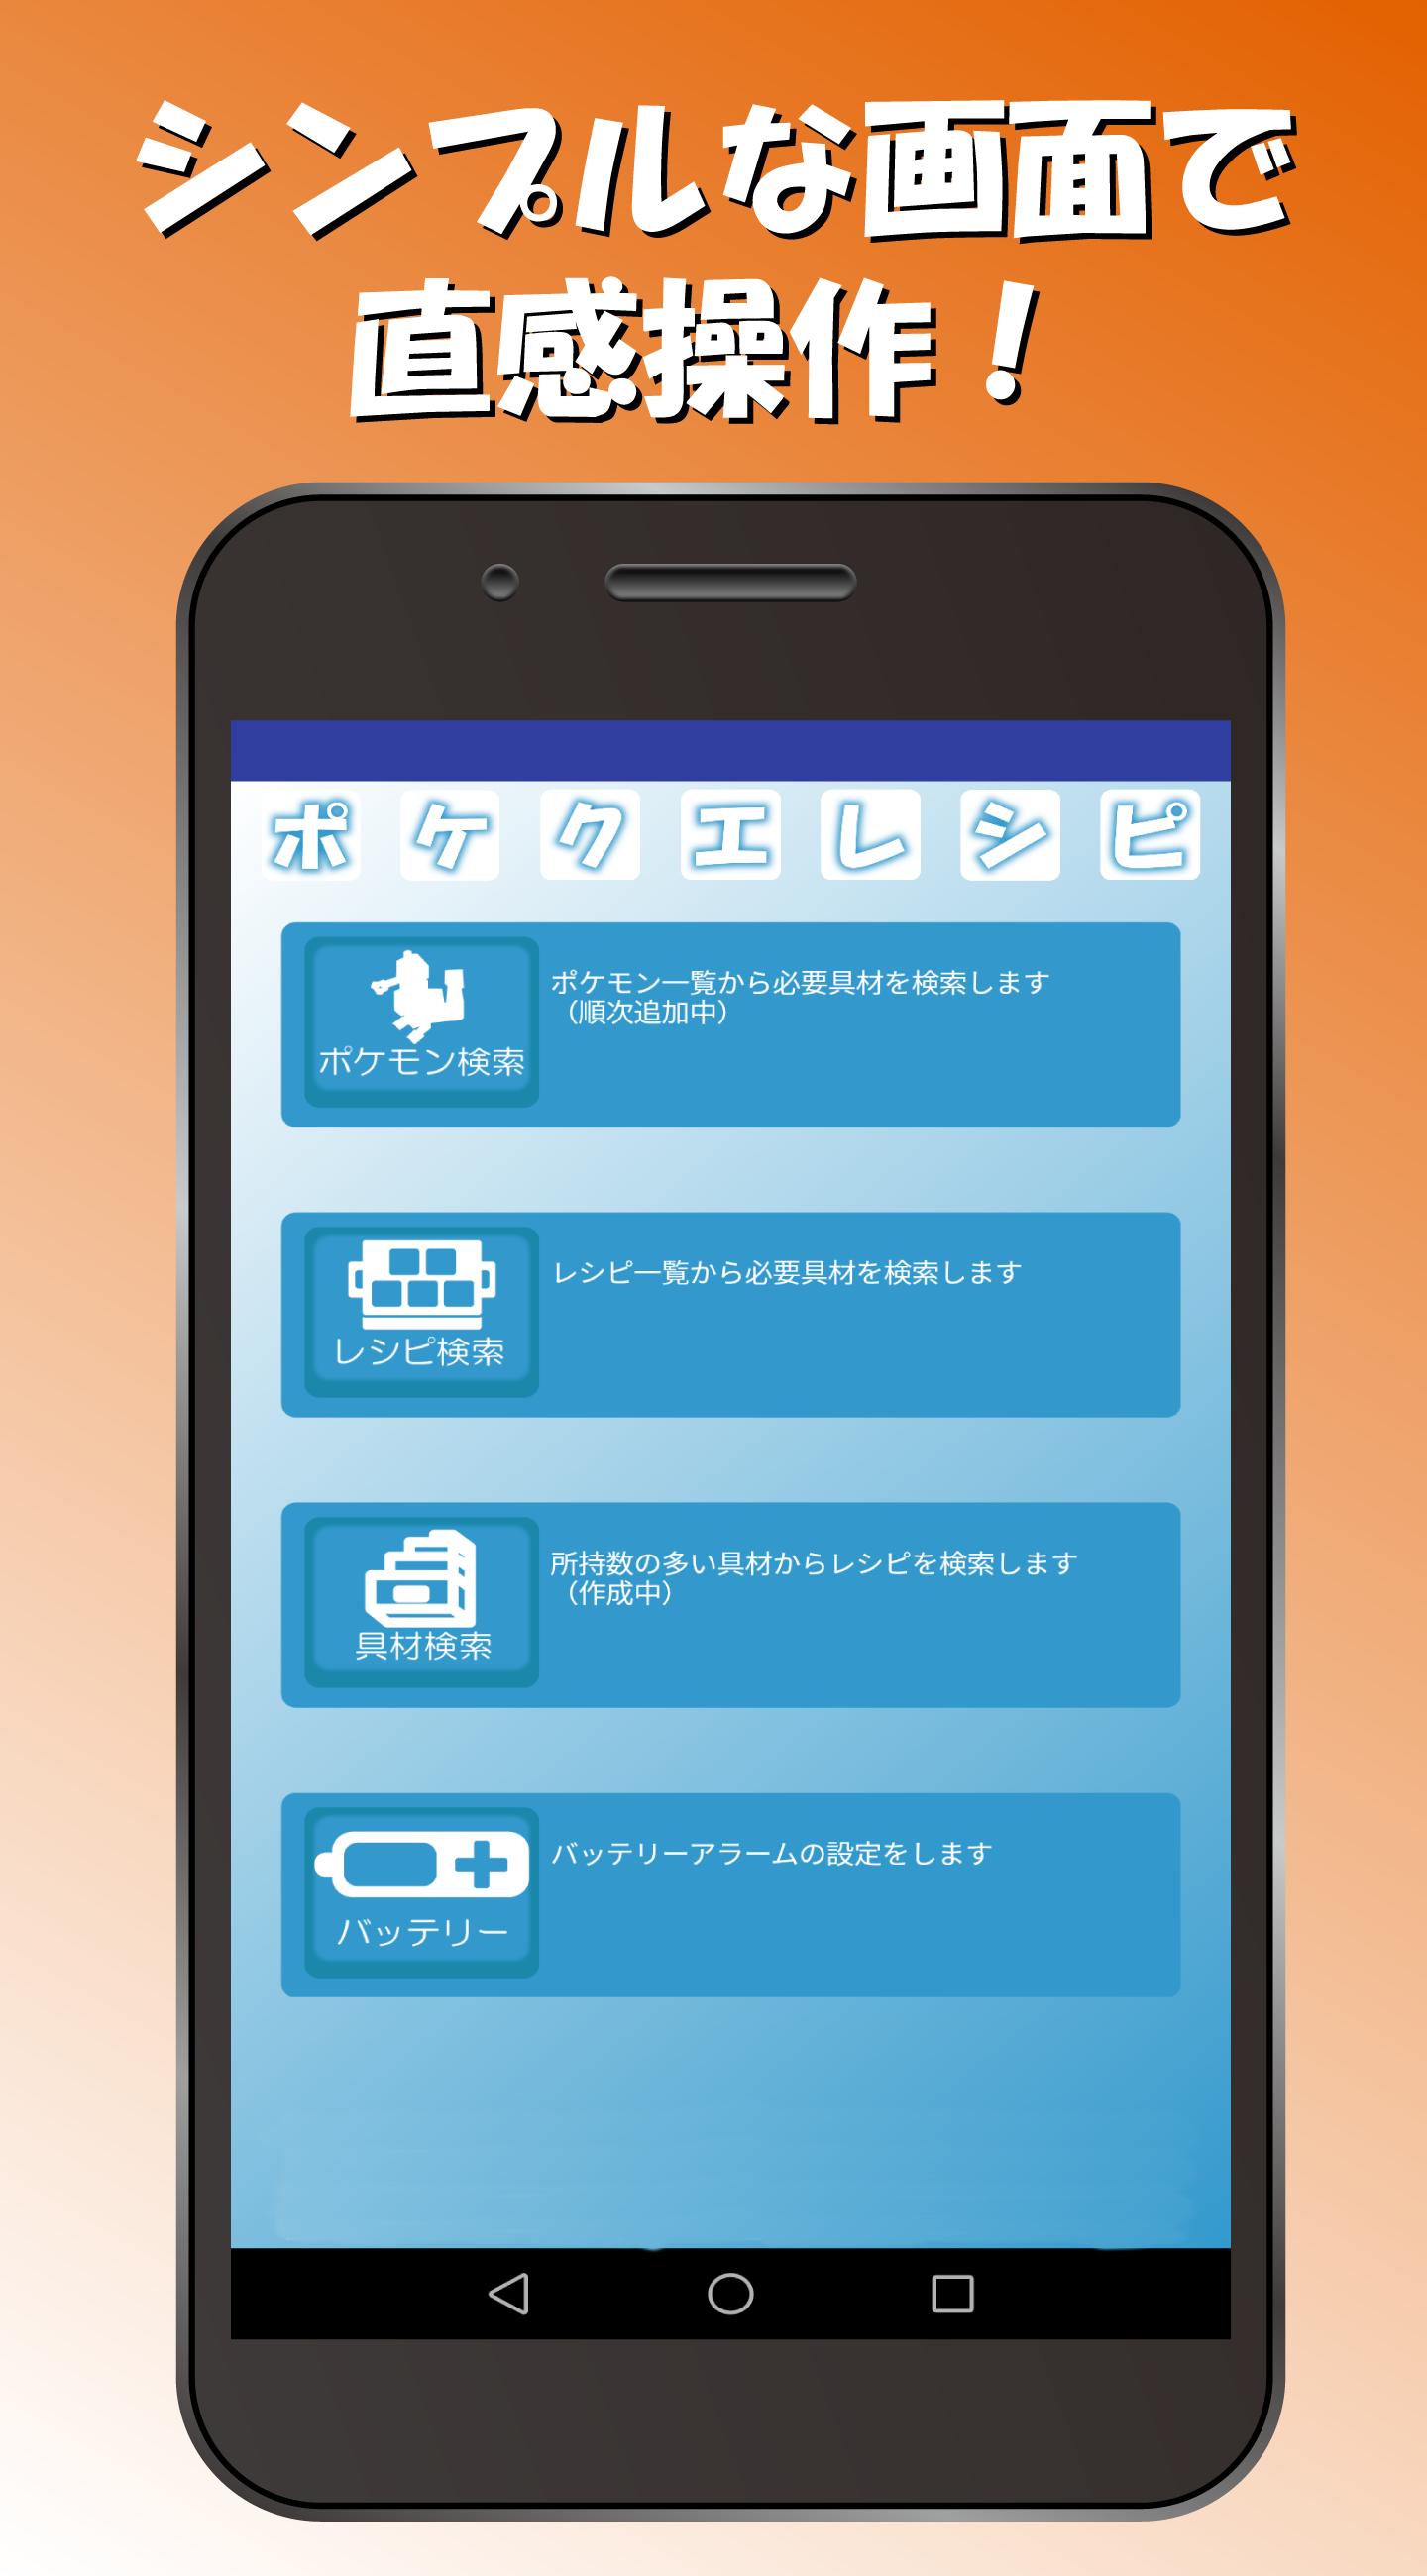 レシピ For ポケモンクエスト For Android Apk Download